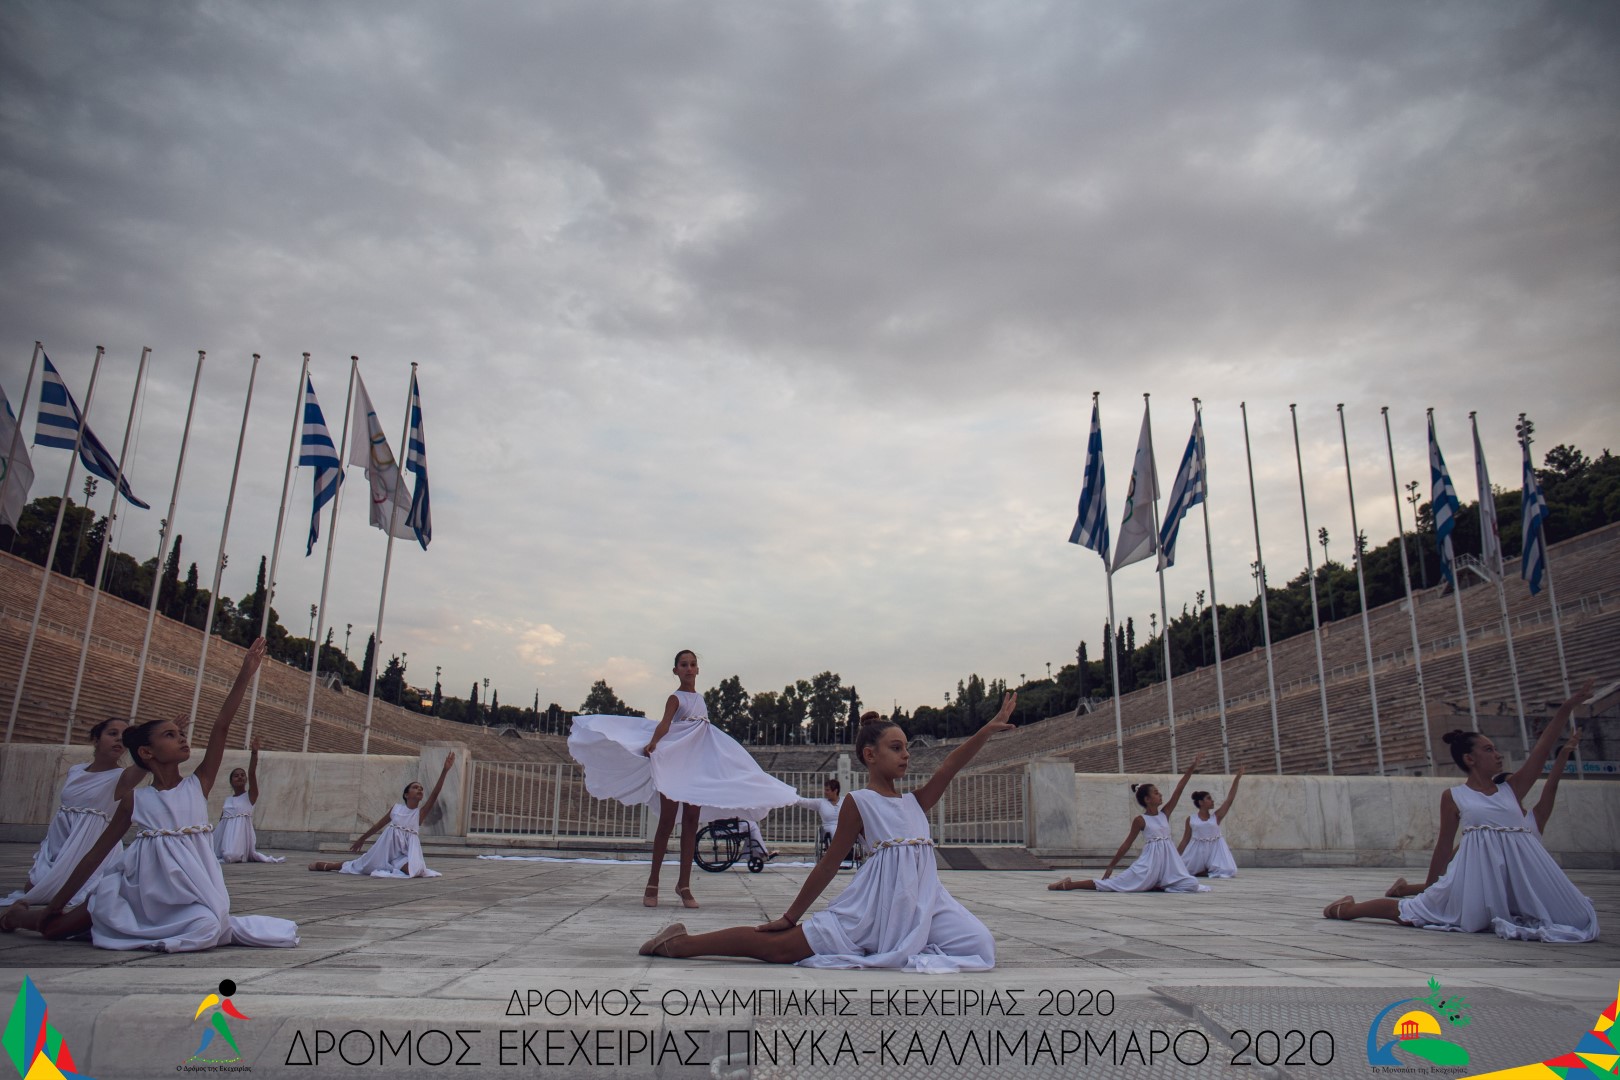 Δρόμος Ολυμπιακής Εκεχειρίας 2020: Το πανανθρώπινο μήνυμα της Ειρήνης στο Παναθηναϊκό Στάδιο